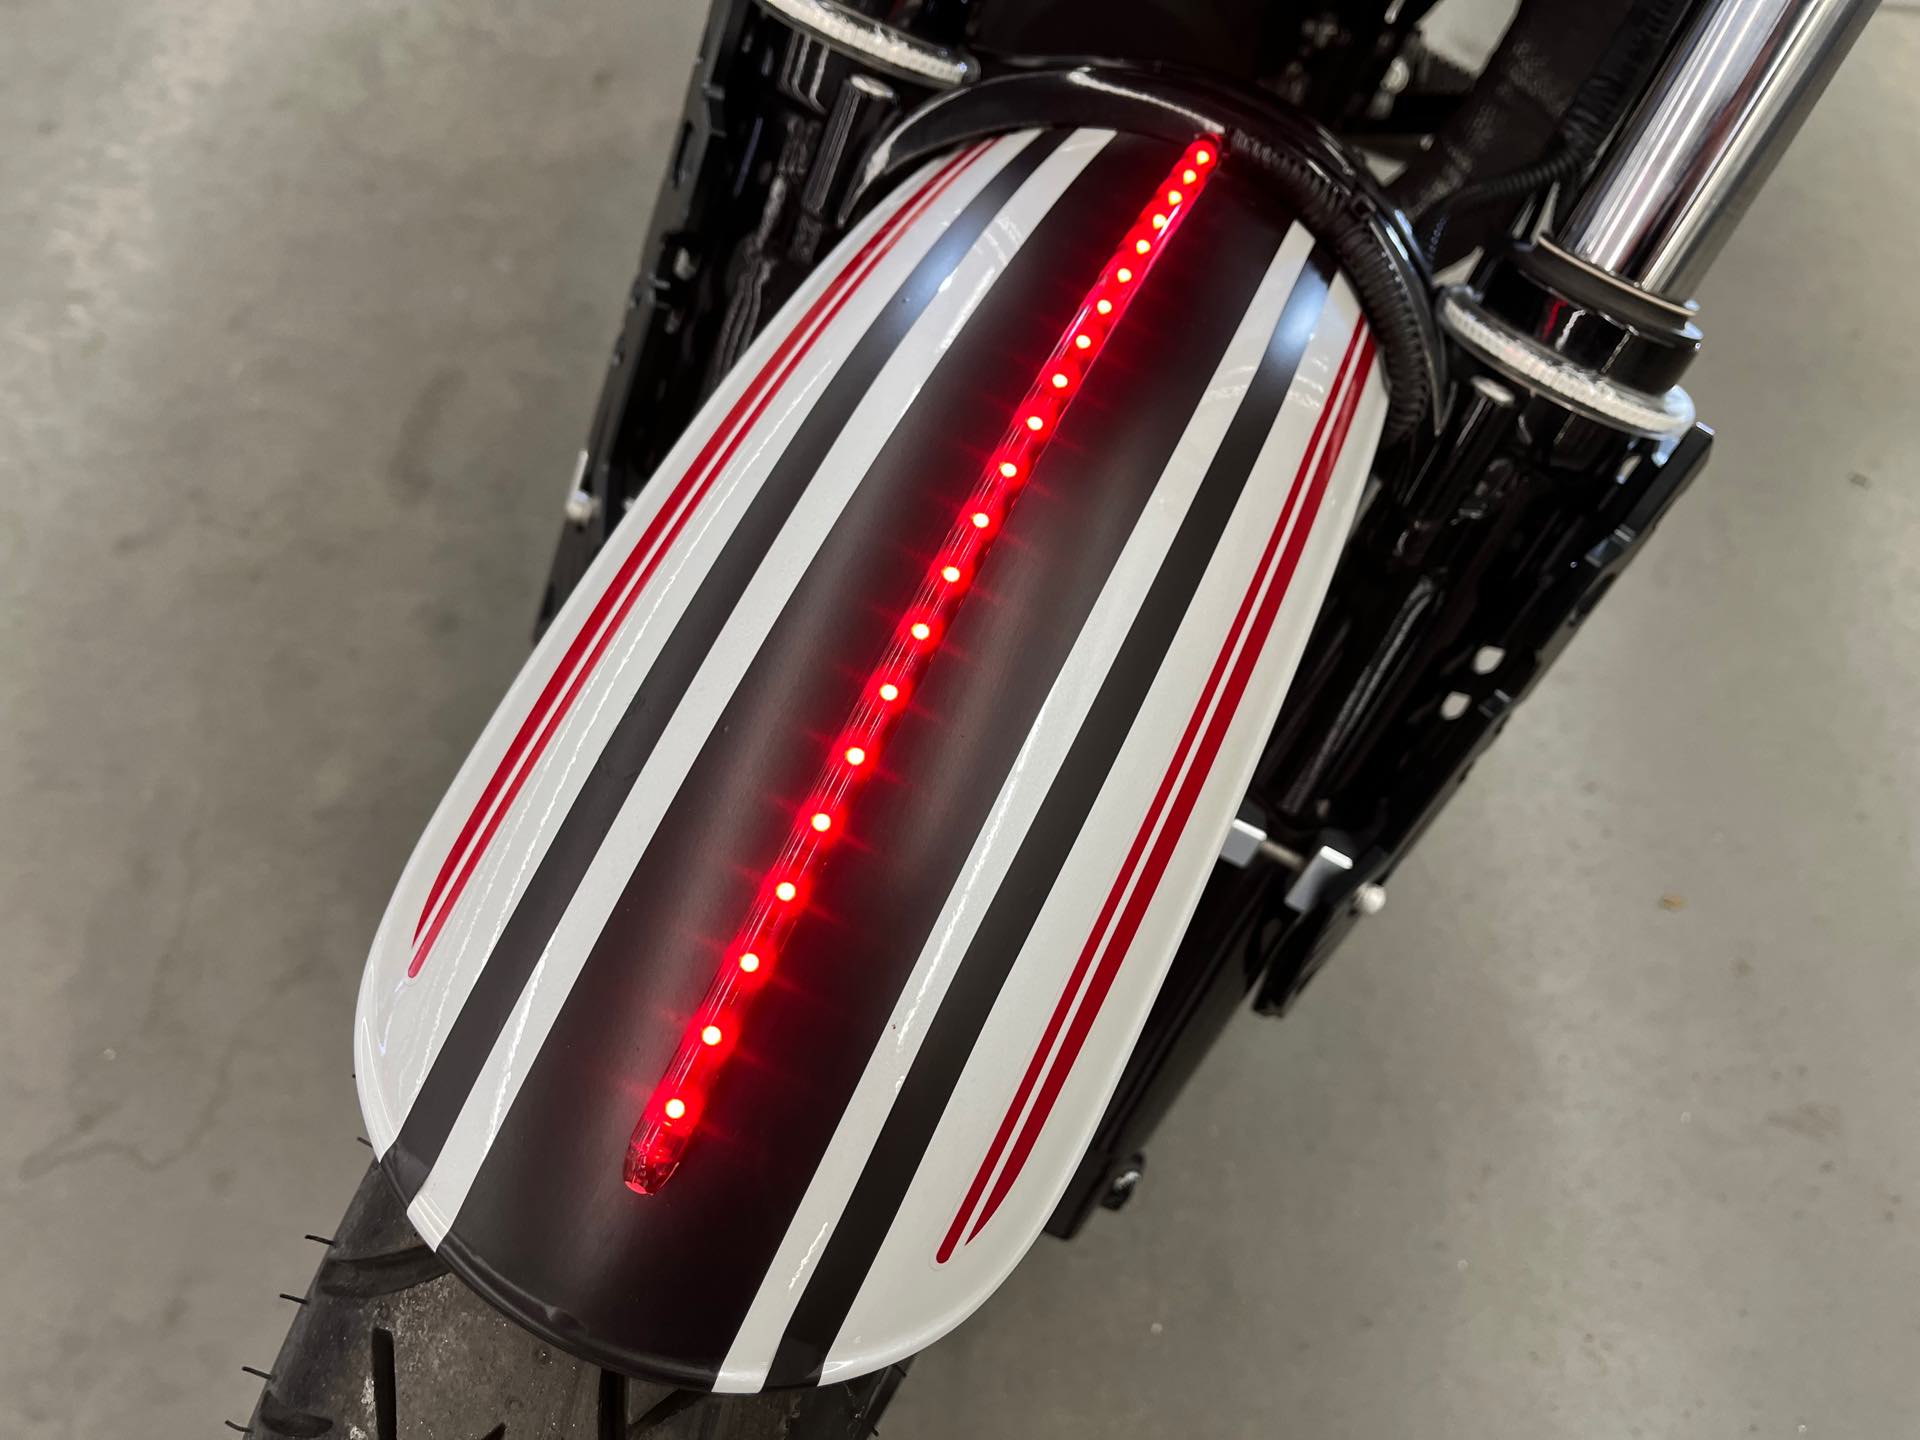 2017 Moto Guzzi V9 Roamer at Aces Motorcycles - Denver